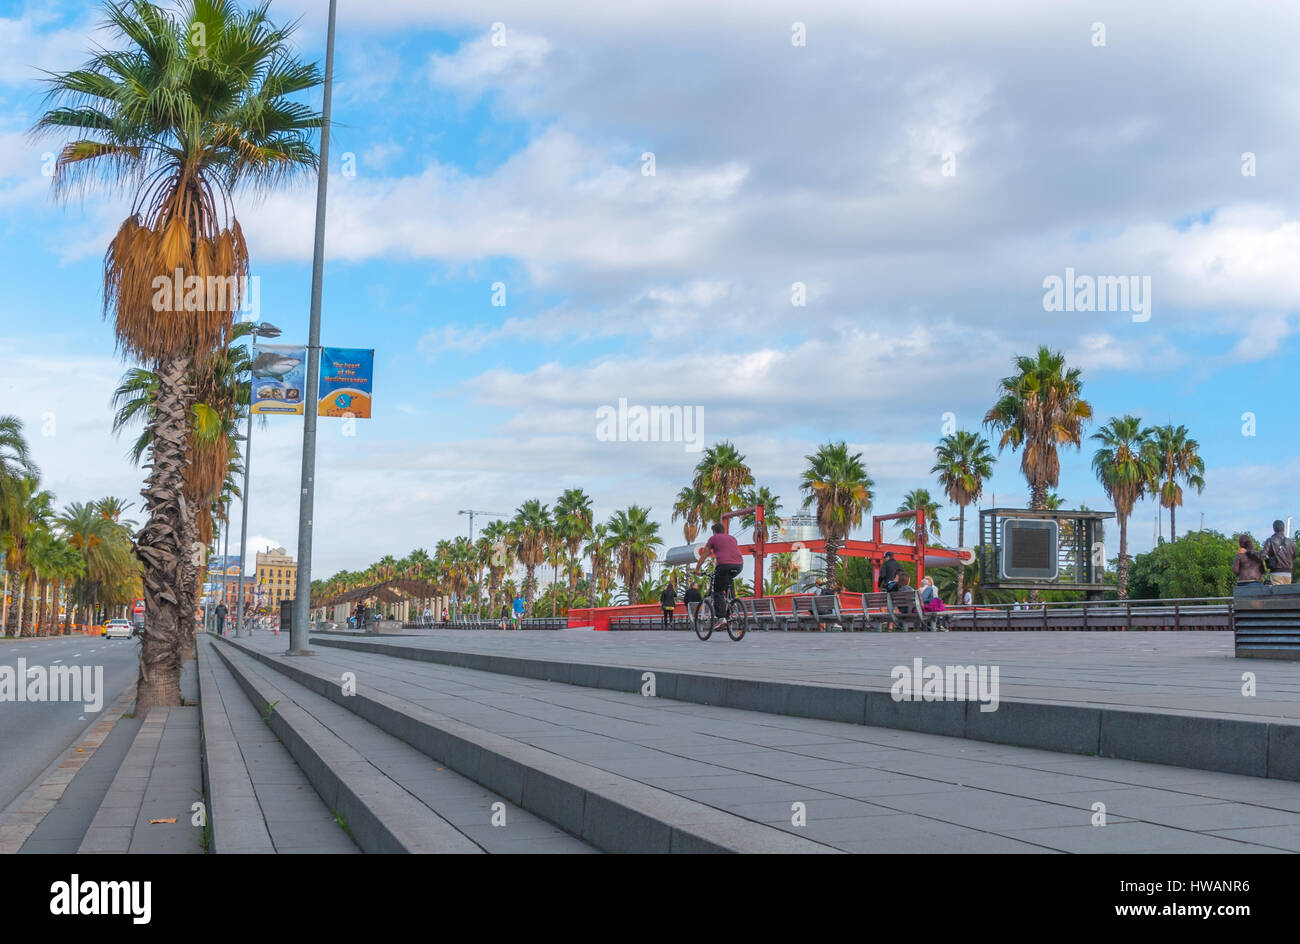 Barcelone, Espagne, Nov 3rd, 2013 : l'économie touristique - Zone urbaine à l'extérieur, les gens profiter du beau temps. La marche, la course, la bicyclette et l'exercice. Banque D'Images